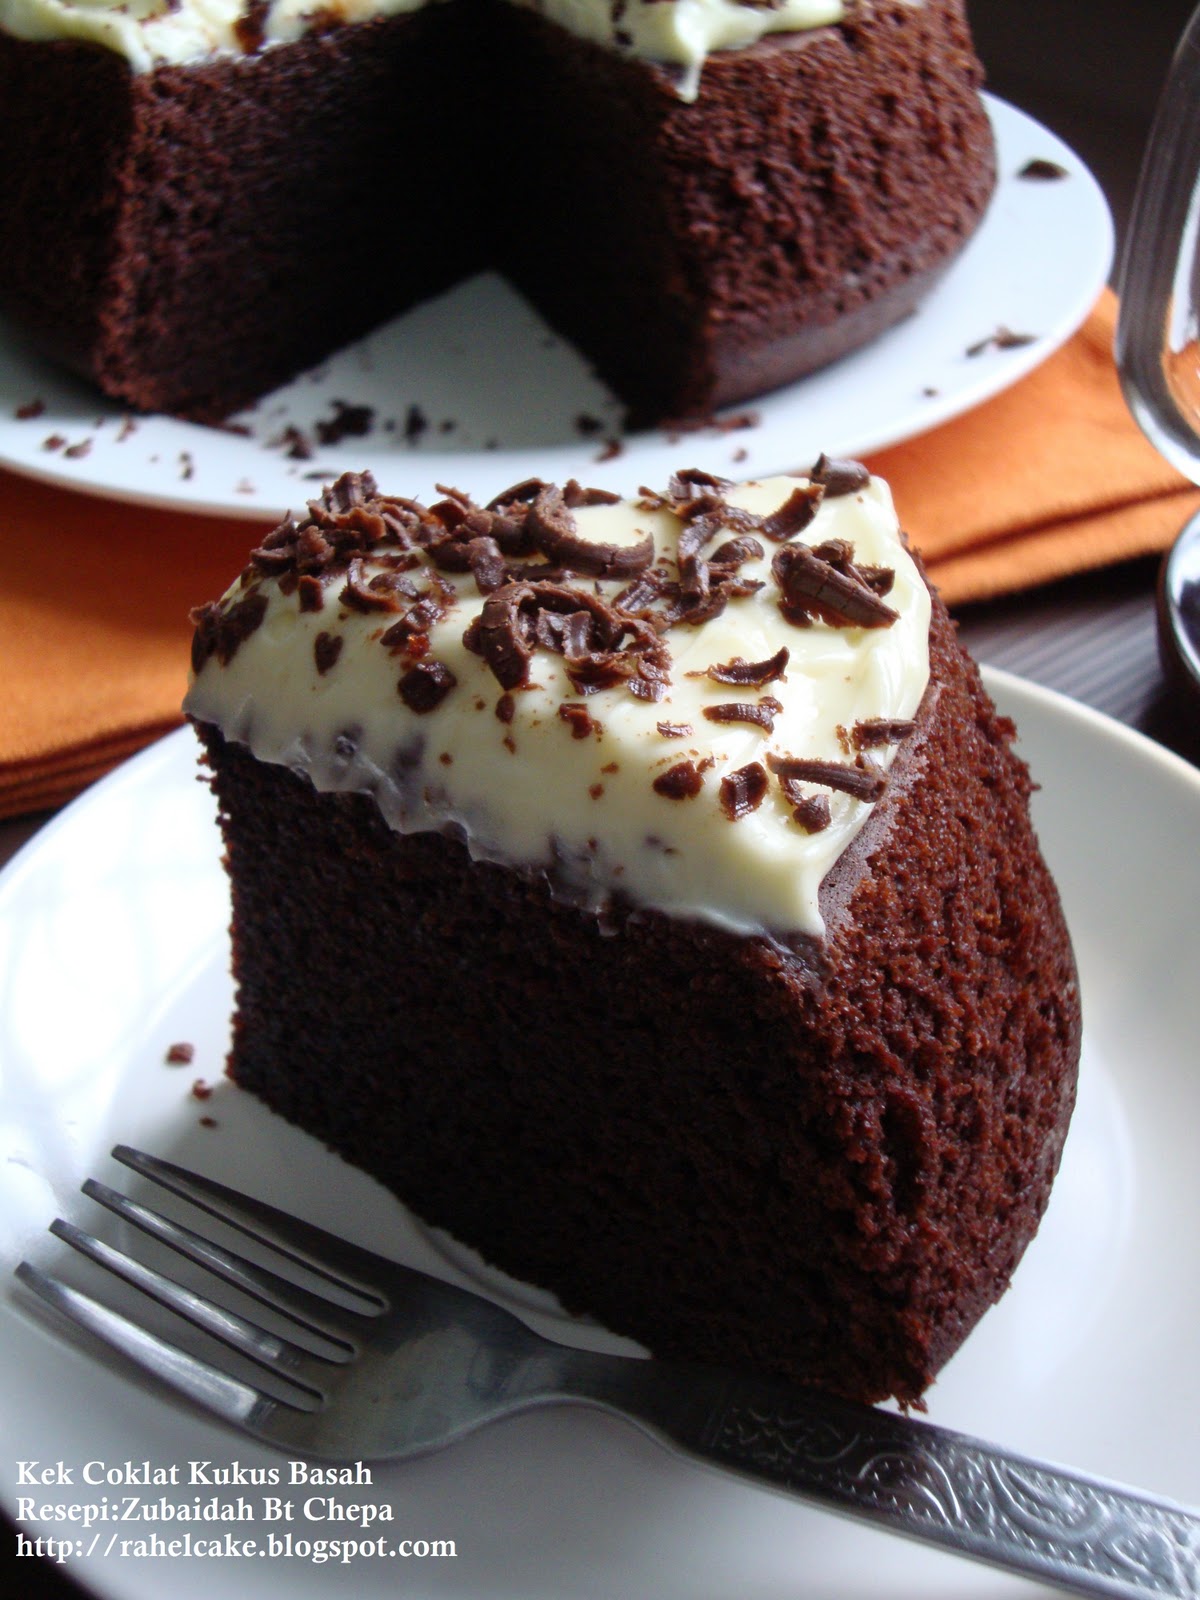 I Love Cake: Kek Coklat Kukus Basah